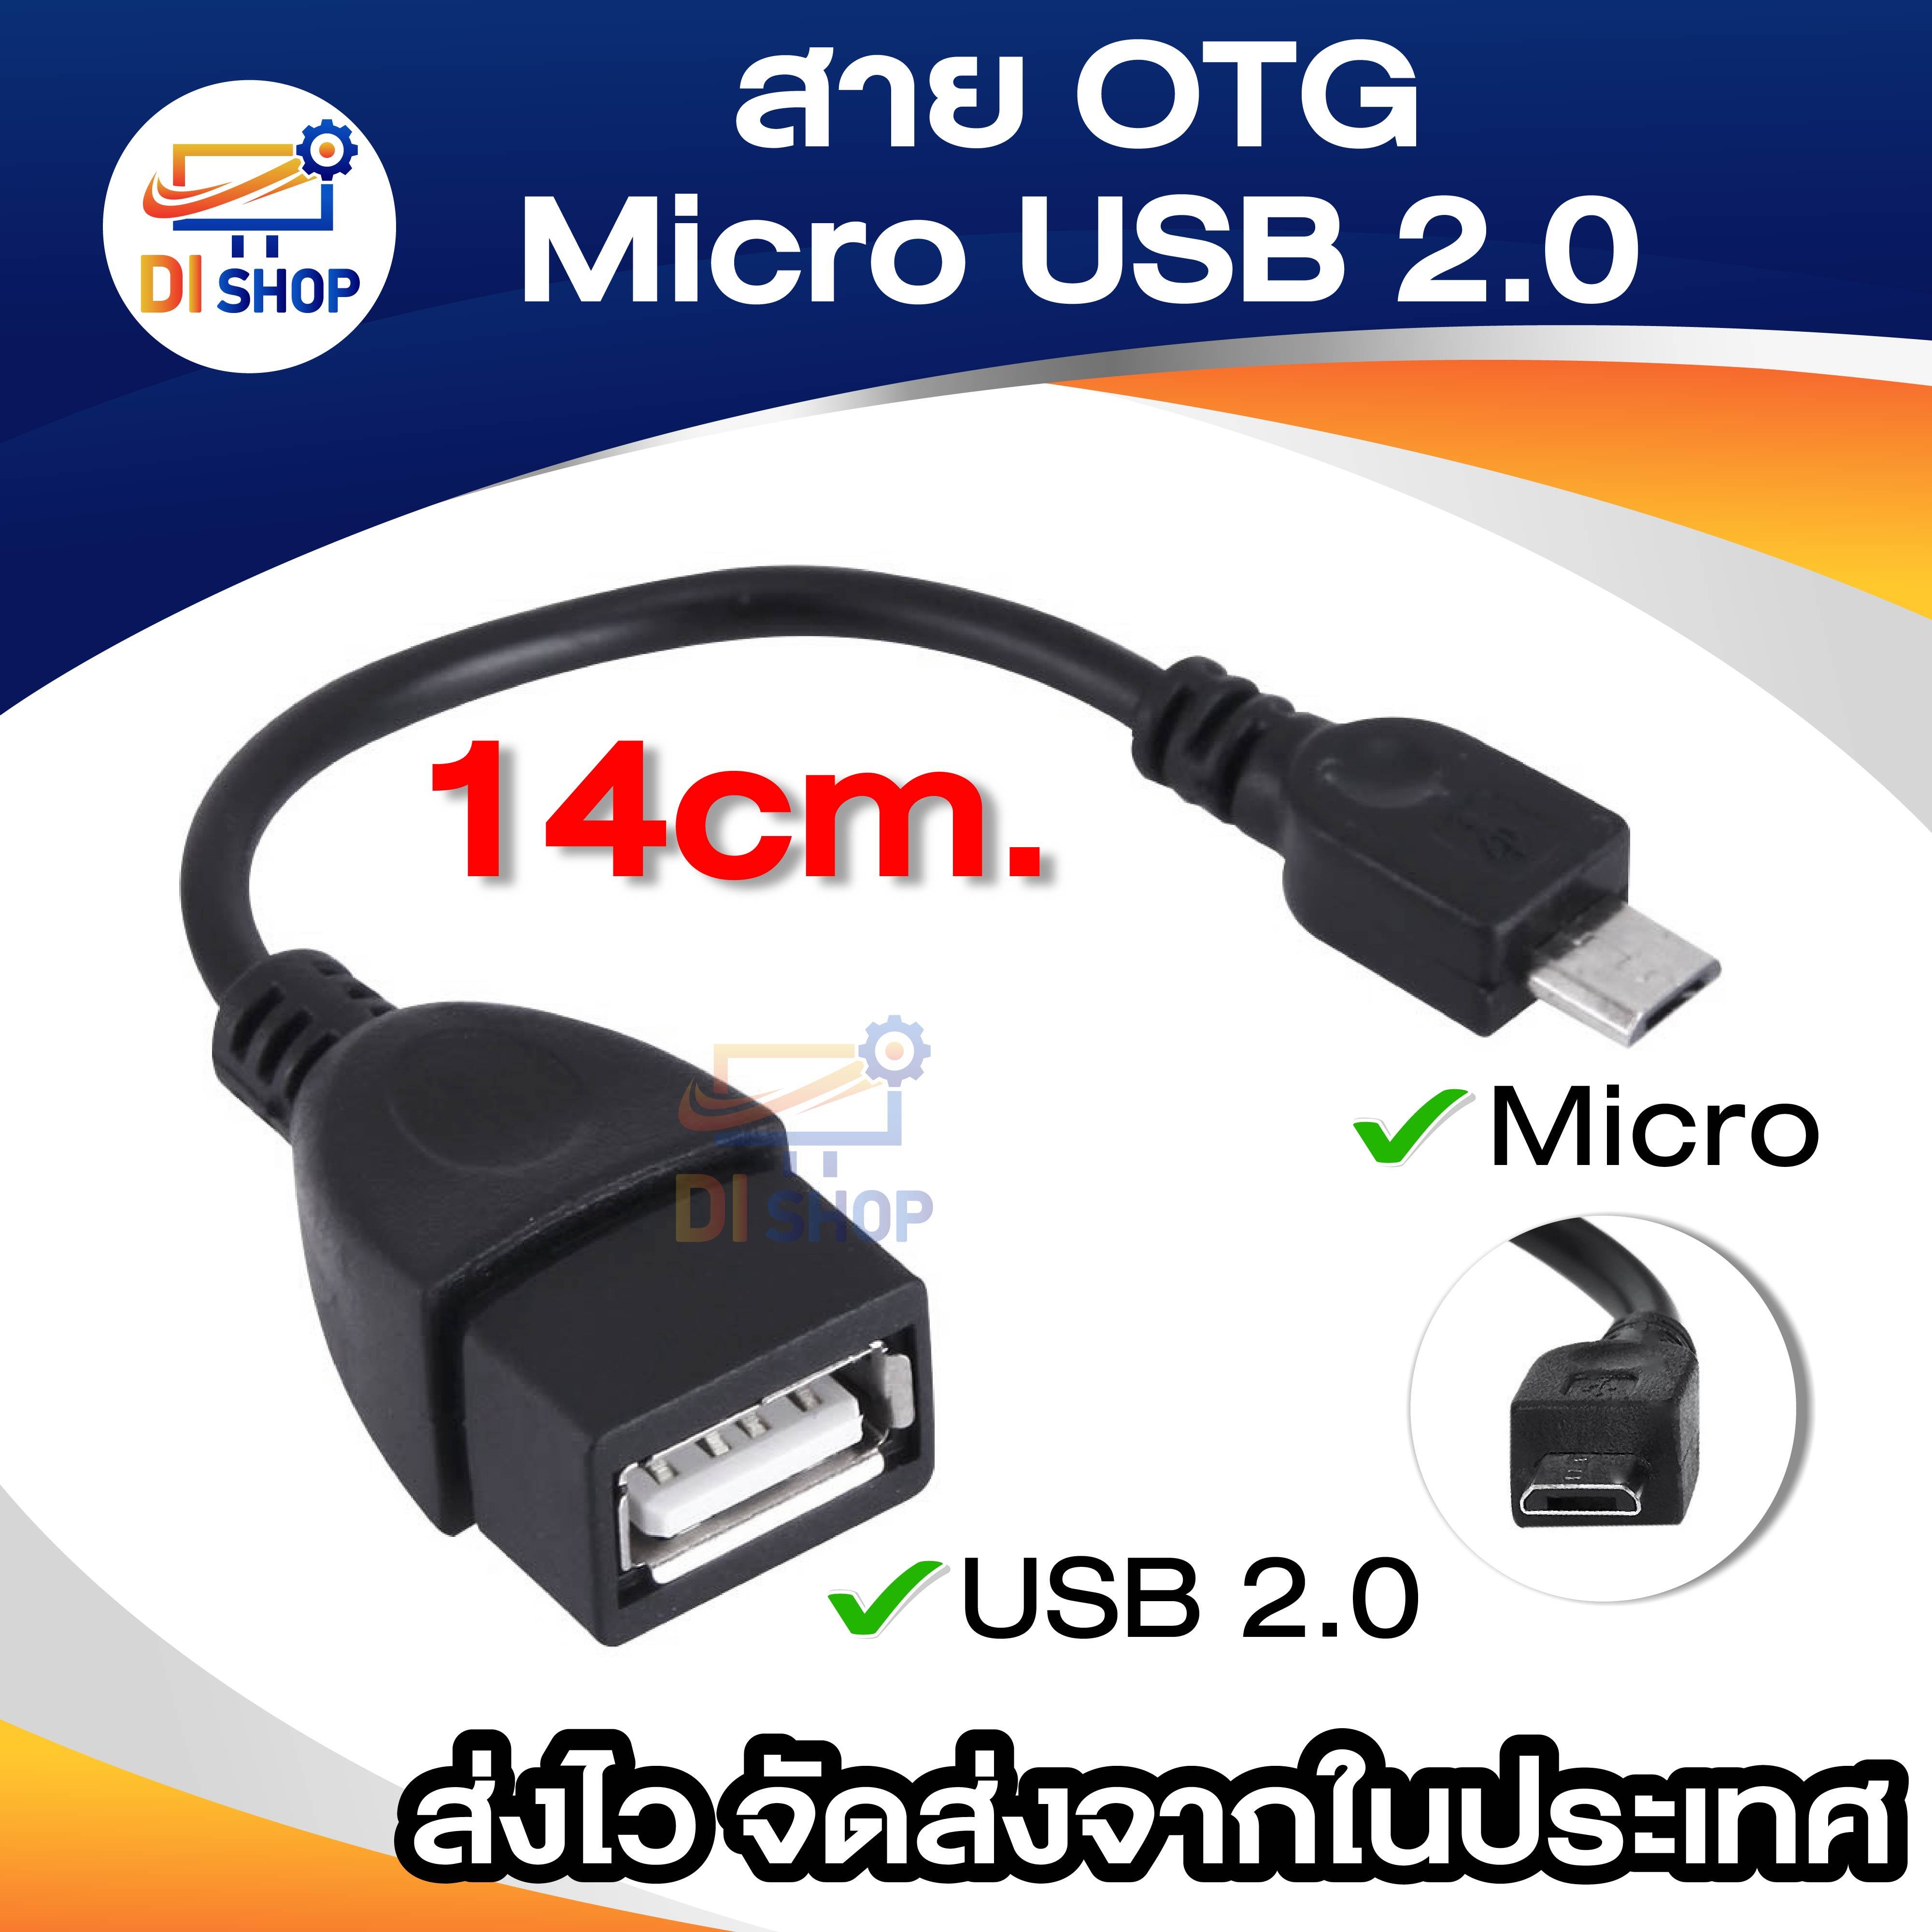 สาย OTG Micro USB 2.0 แท้ เปลี่ยนโทรศัพท์ ให้เป็นดั่งคอมพิวเตอร์ ใช้กับ Android ยาว 14 cm (Black)